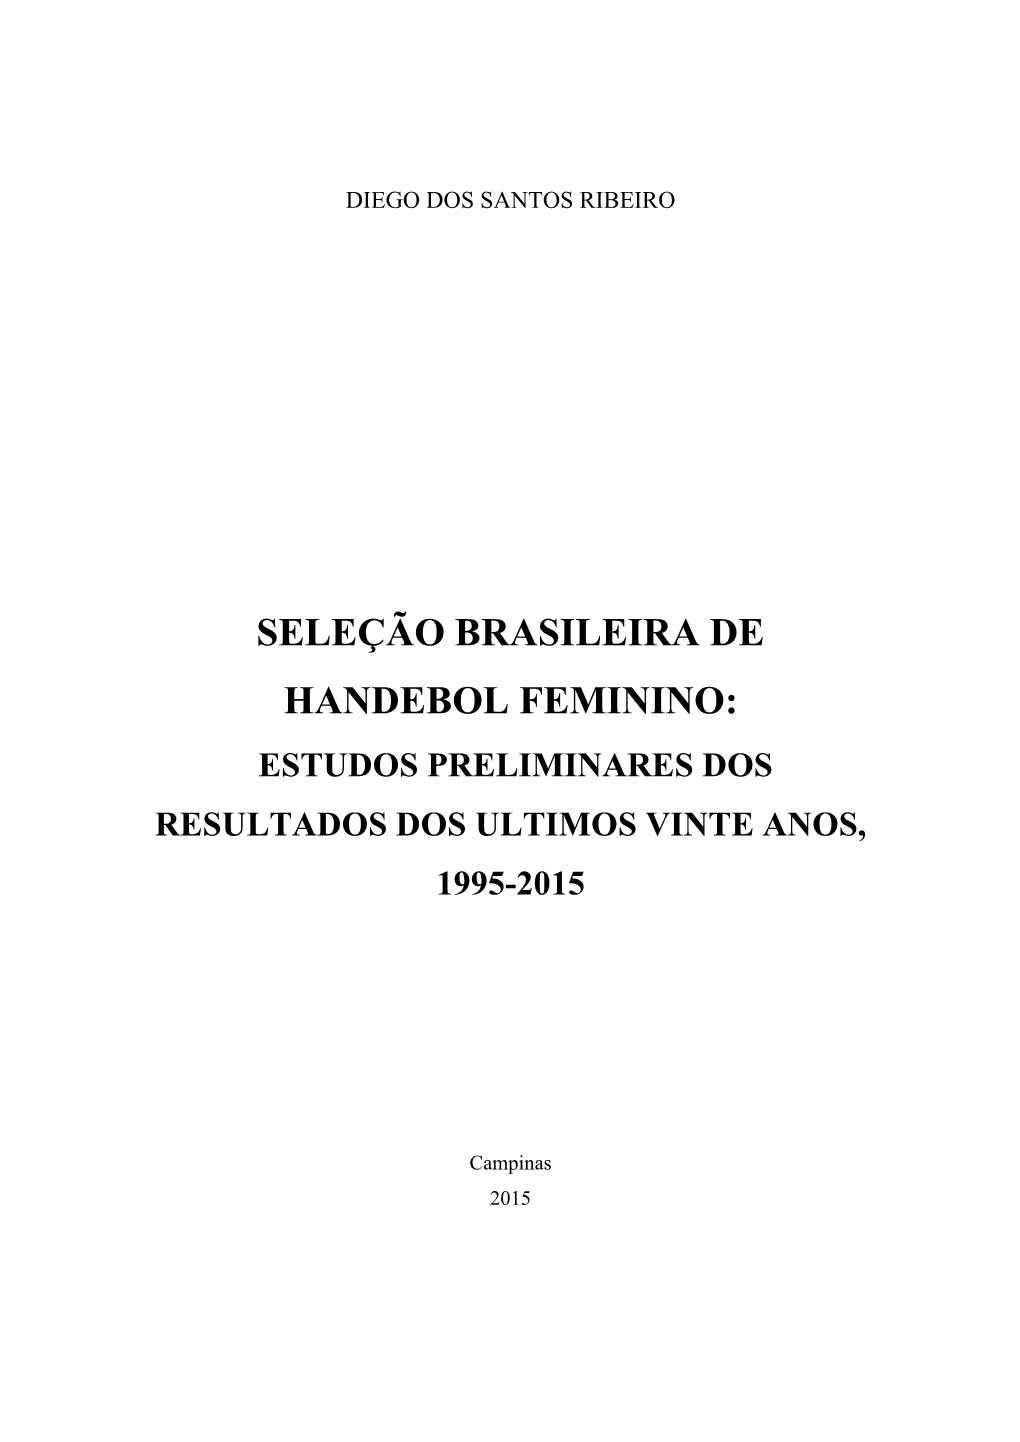 Seleção Brasileira De Handebol Feminino: Estudos Preliminares Dos Resultados Dos Ultimos Vinte Anos, 1995-2015